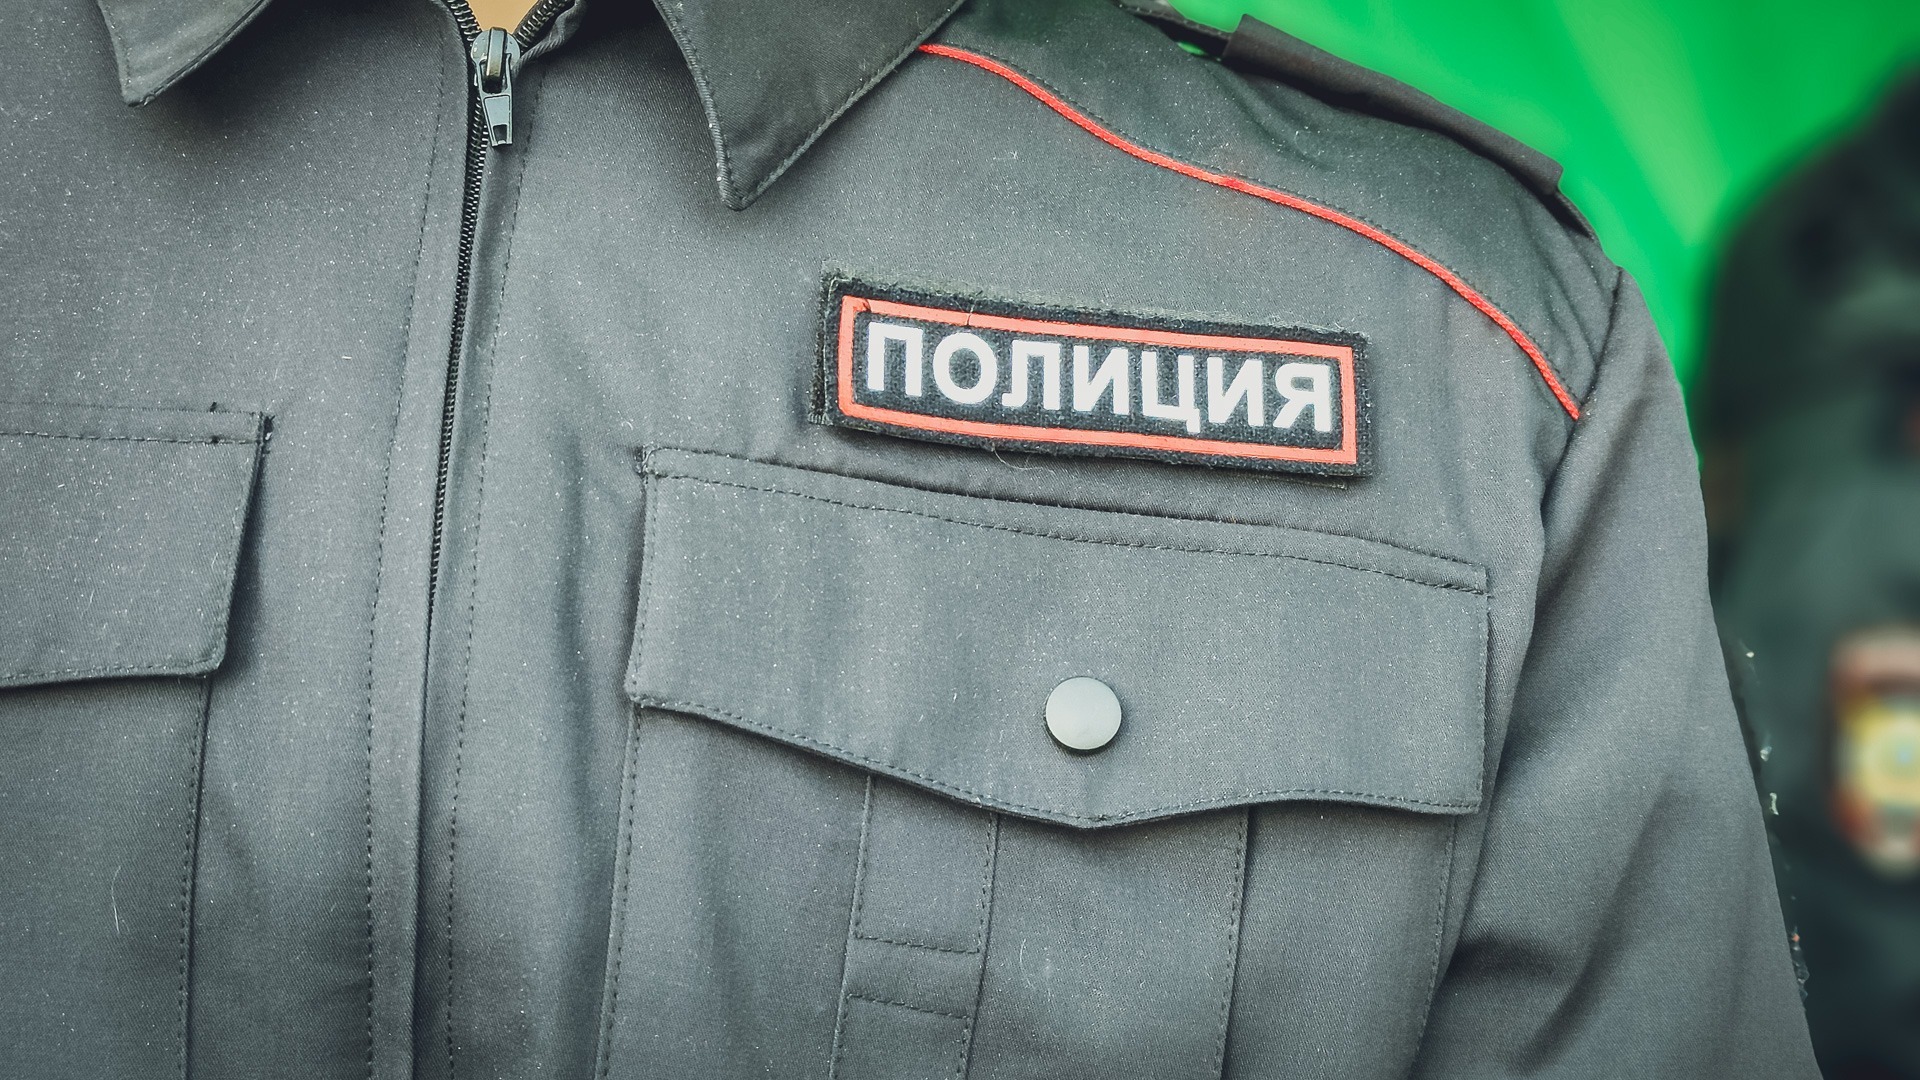 Полицейского в Краснодаре задержали за ремонт служебных гаджетов за деньги